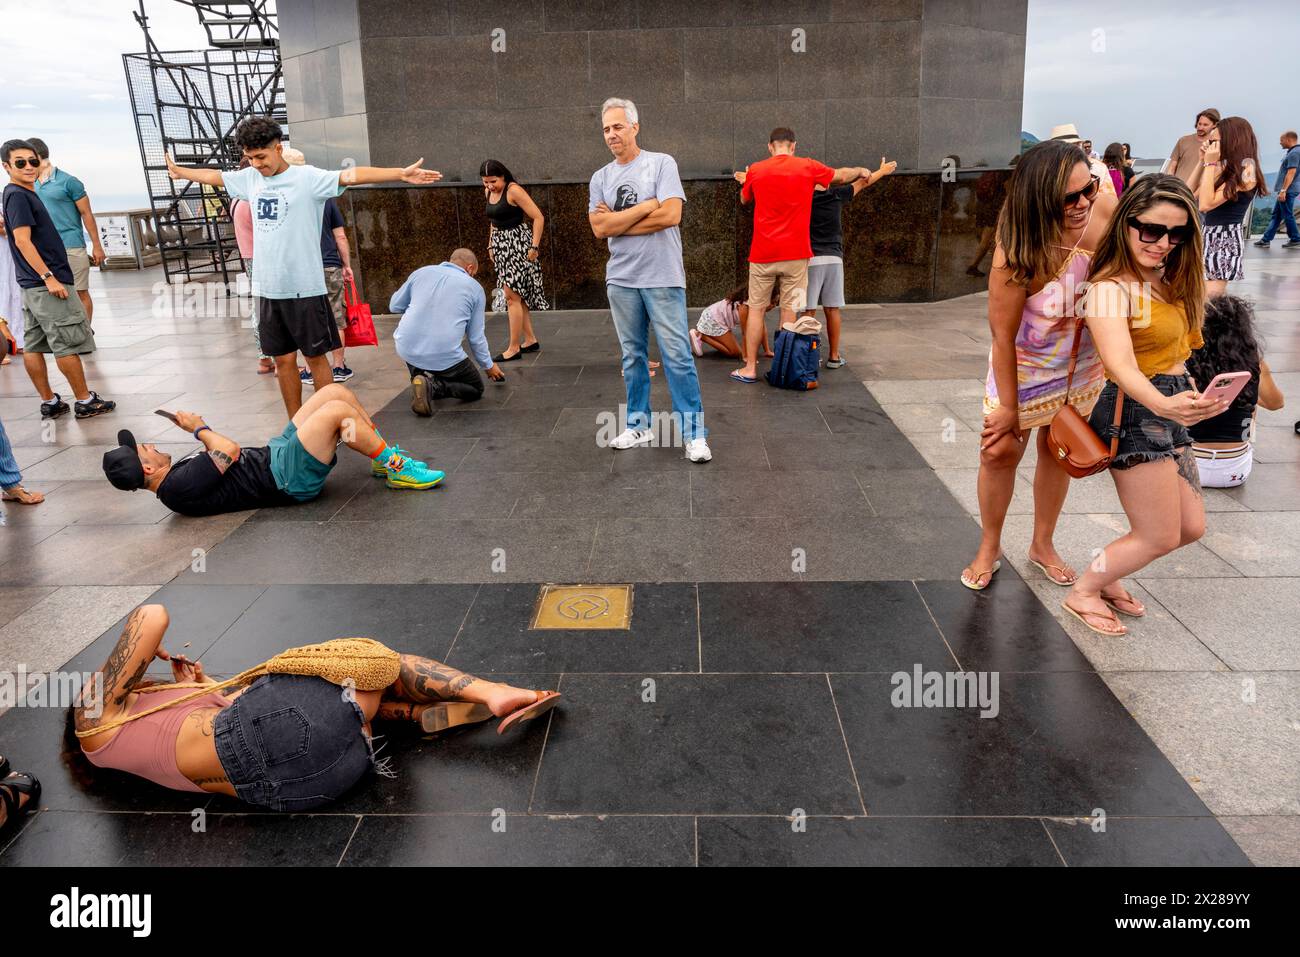 Turisti/visitatori che scattano foto e posano per scattare foto alla statua del Cristo Redentore, Rio de Janeiro, Brasile. Foto Stock